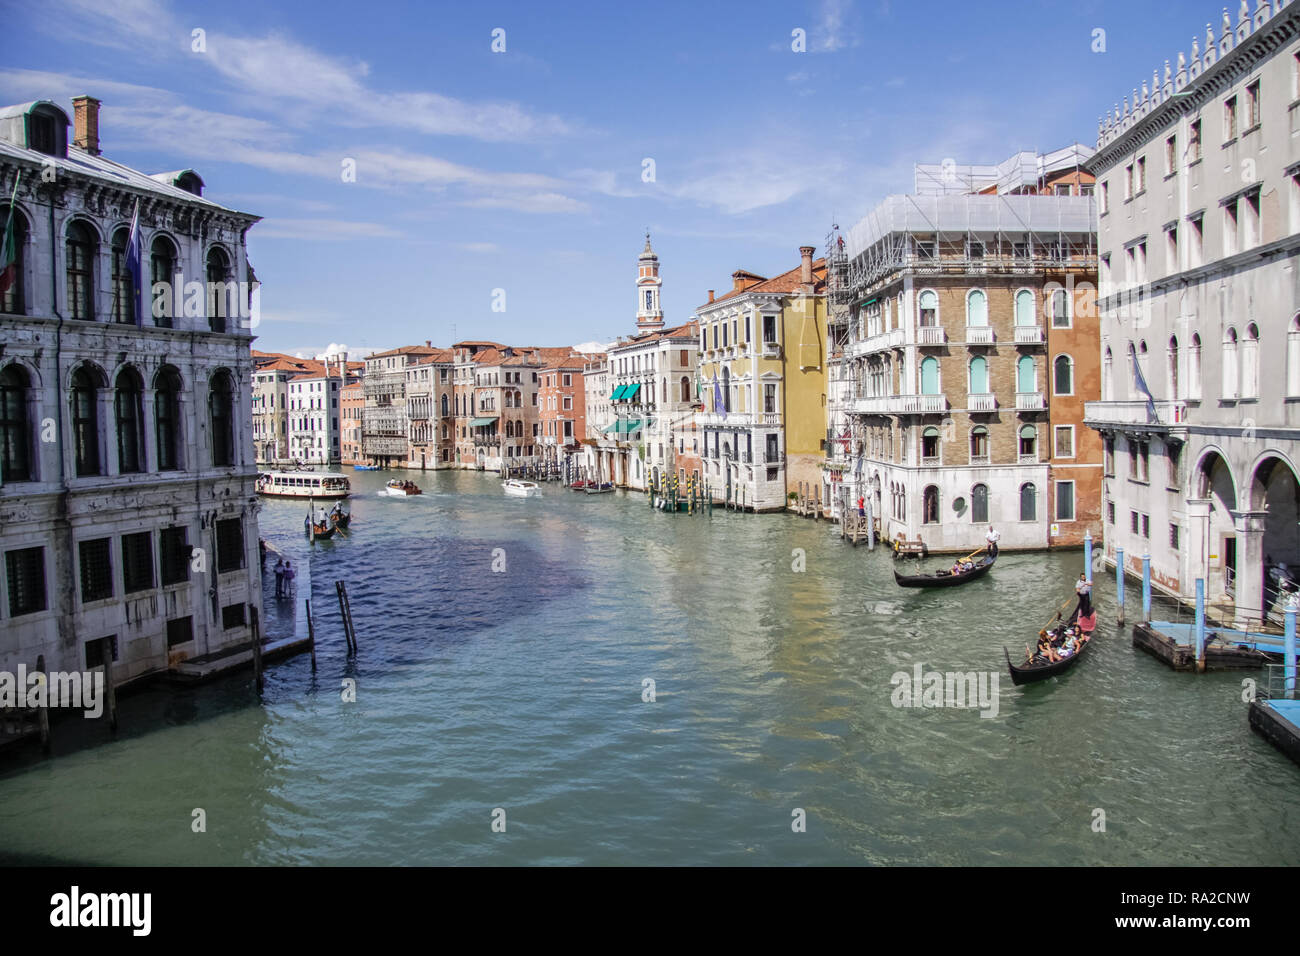 Venise, Italie - 29 mai 2016 : Venise en Italie, l'architecture de la ville, Venise est une destination touristique populaire de l'Europe. Banque D'Images